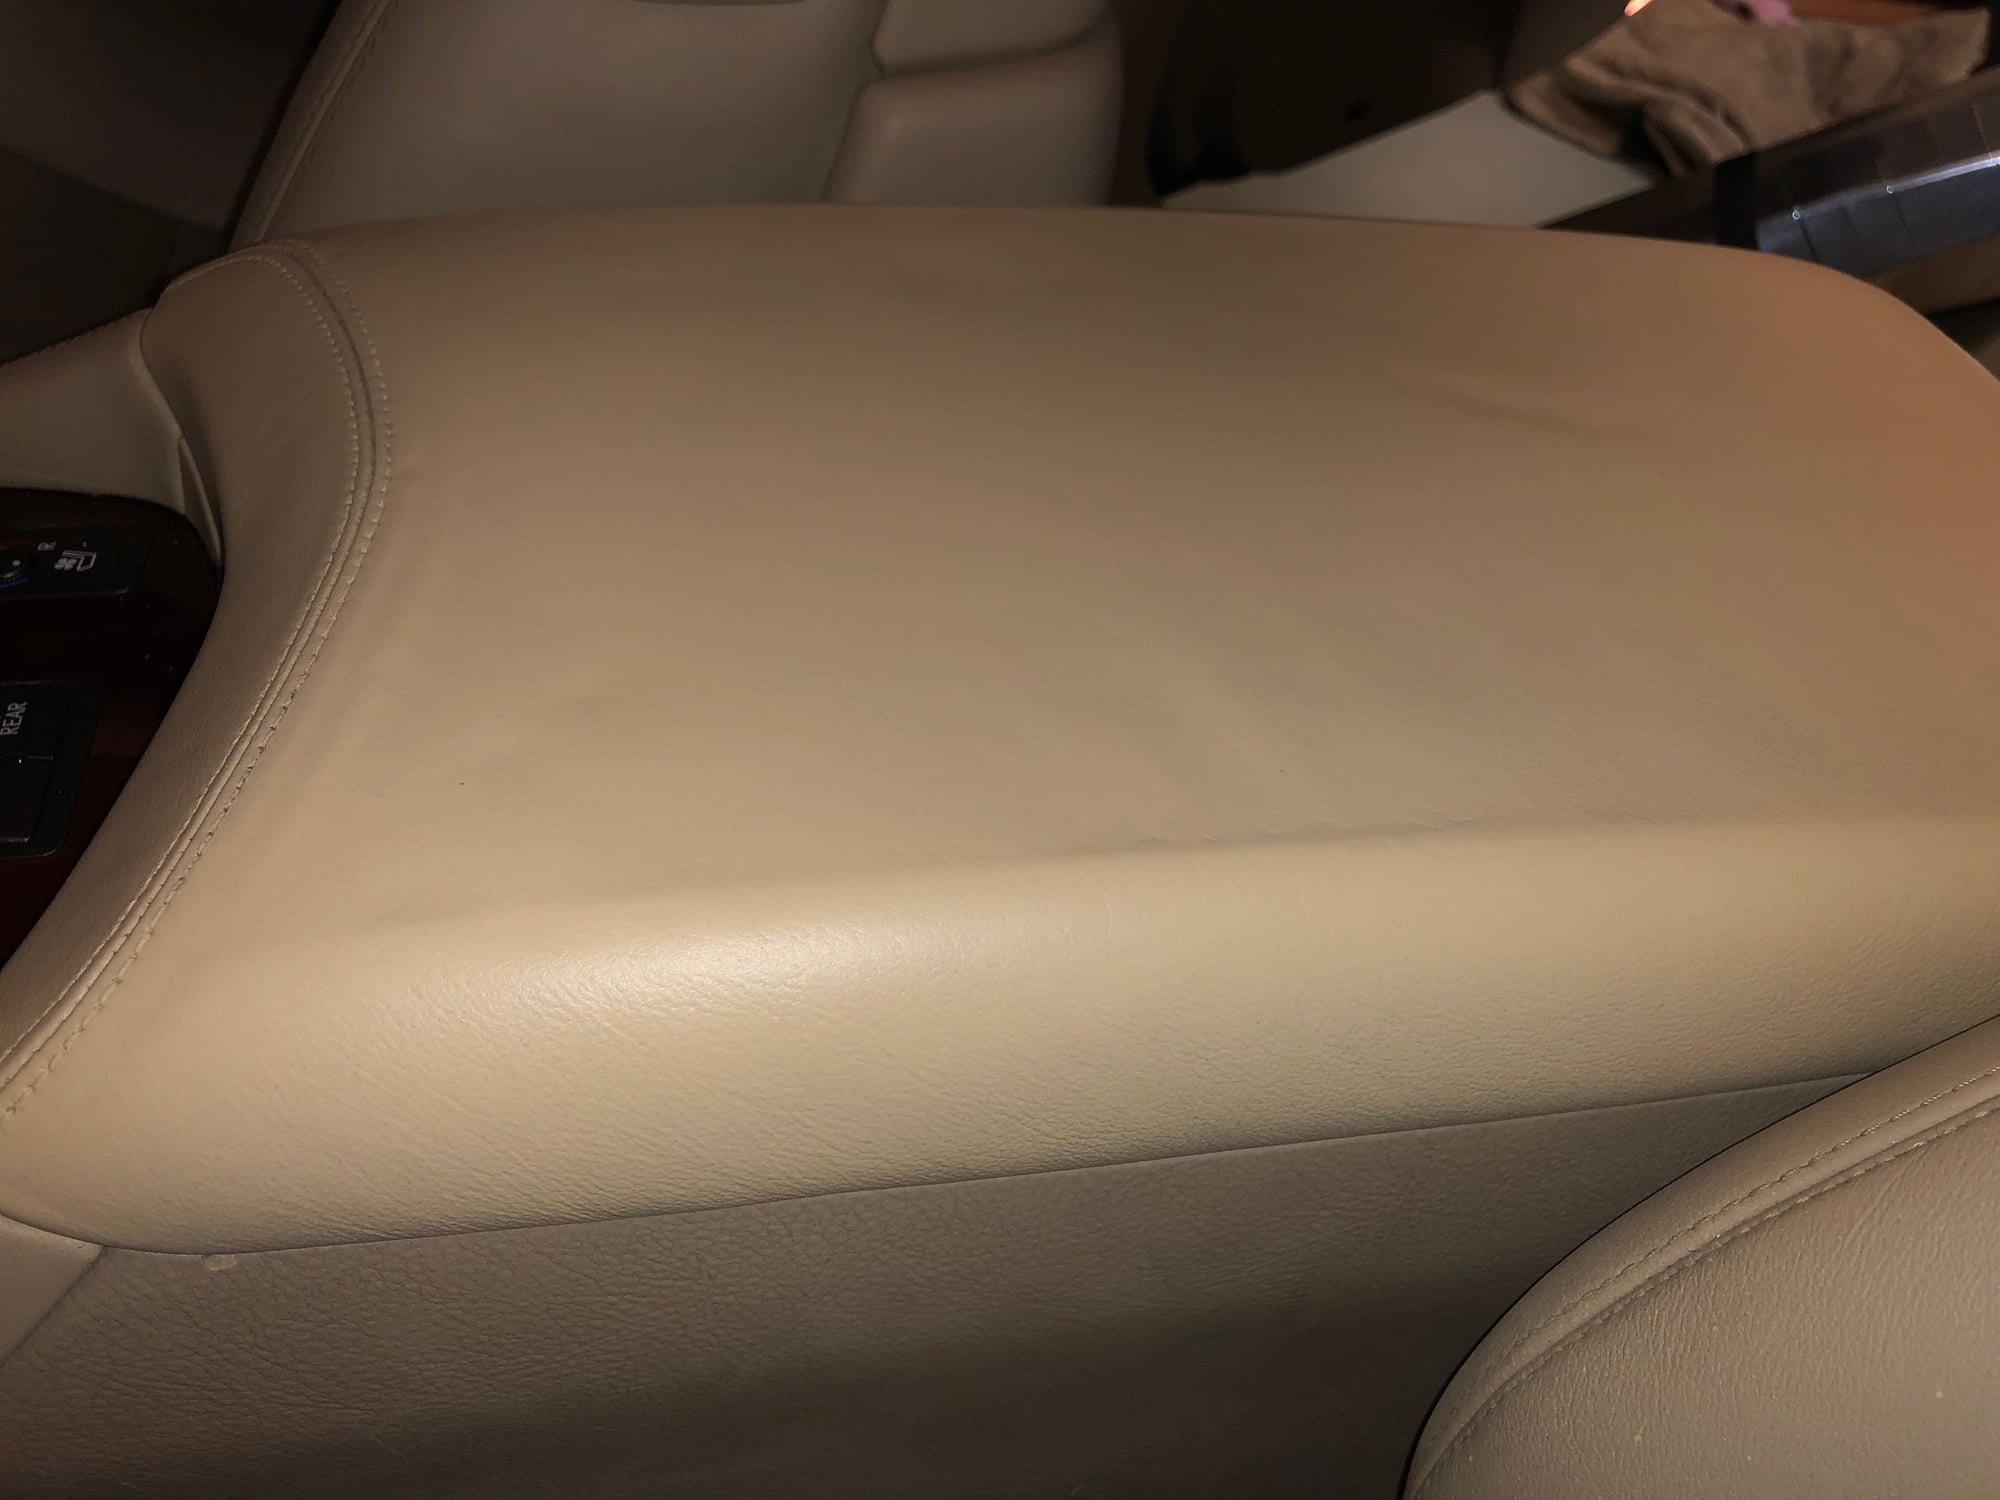 Perforated leather seat cover repair - ClubLexus - Lexus Forum Discussion